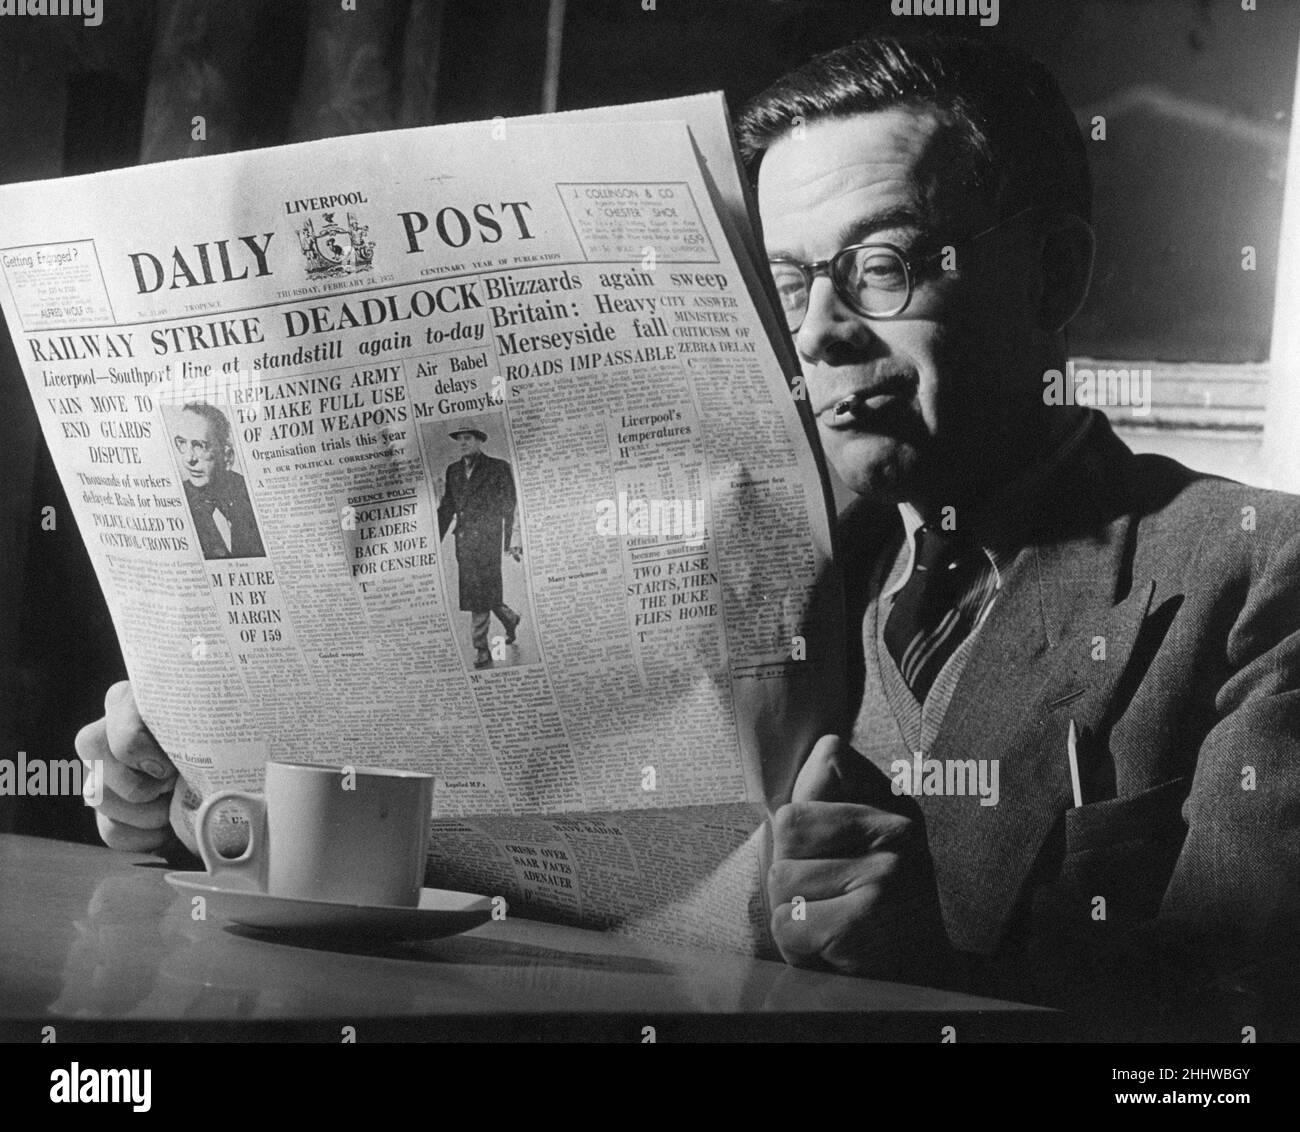 Homme lisant le journal, Liverpool Daily Post, jeudi 24th février 1955.Titres de journaux, blocage de la grève des chemins de fer. Banque D'Images